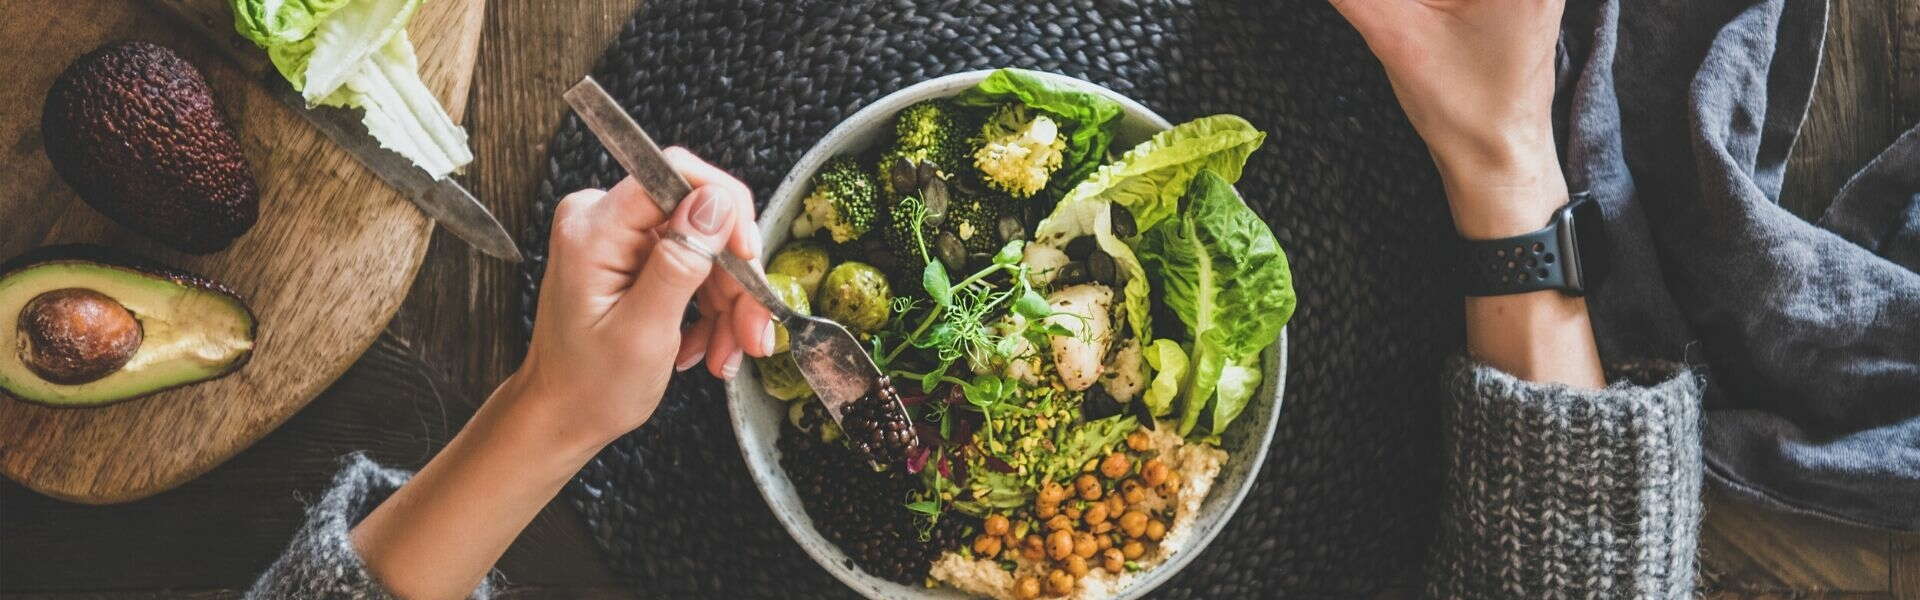 Dieta Vegana | Benefici e possibili rischi dell'alimentazione vegana